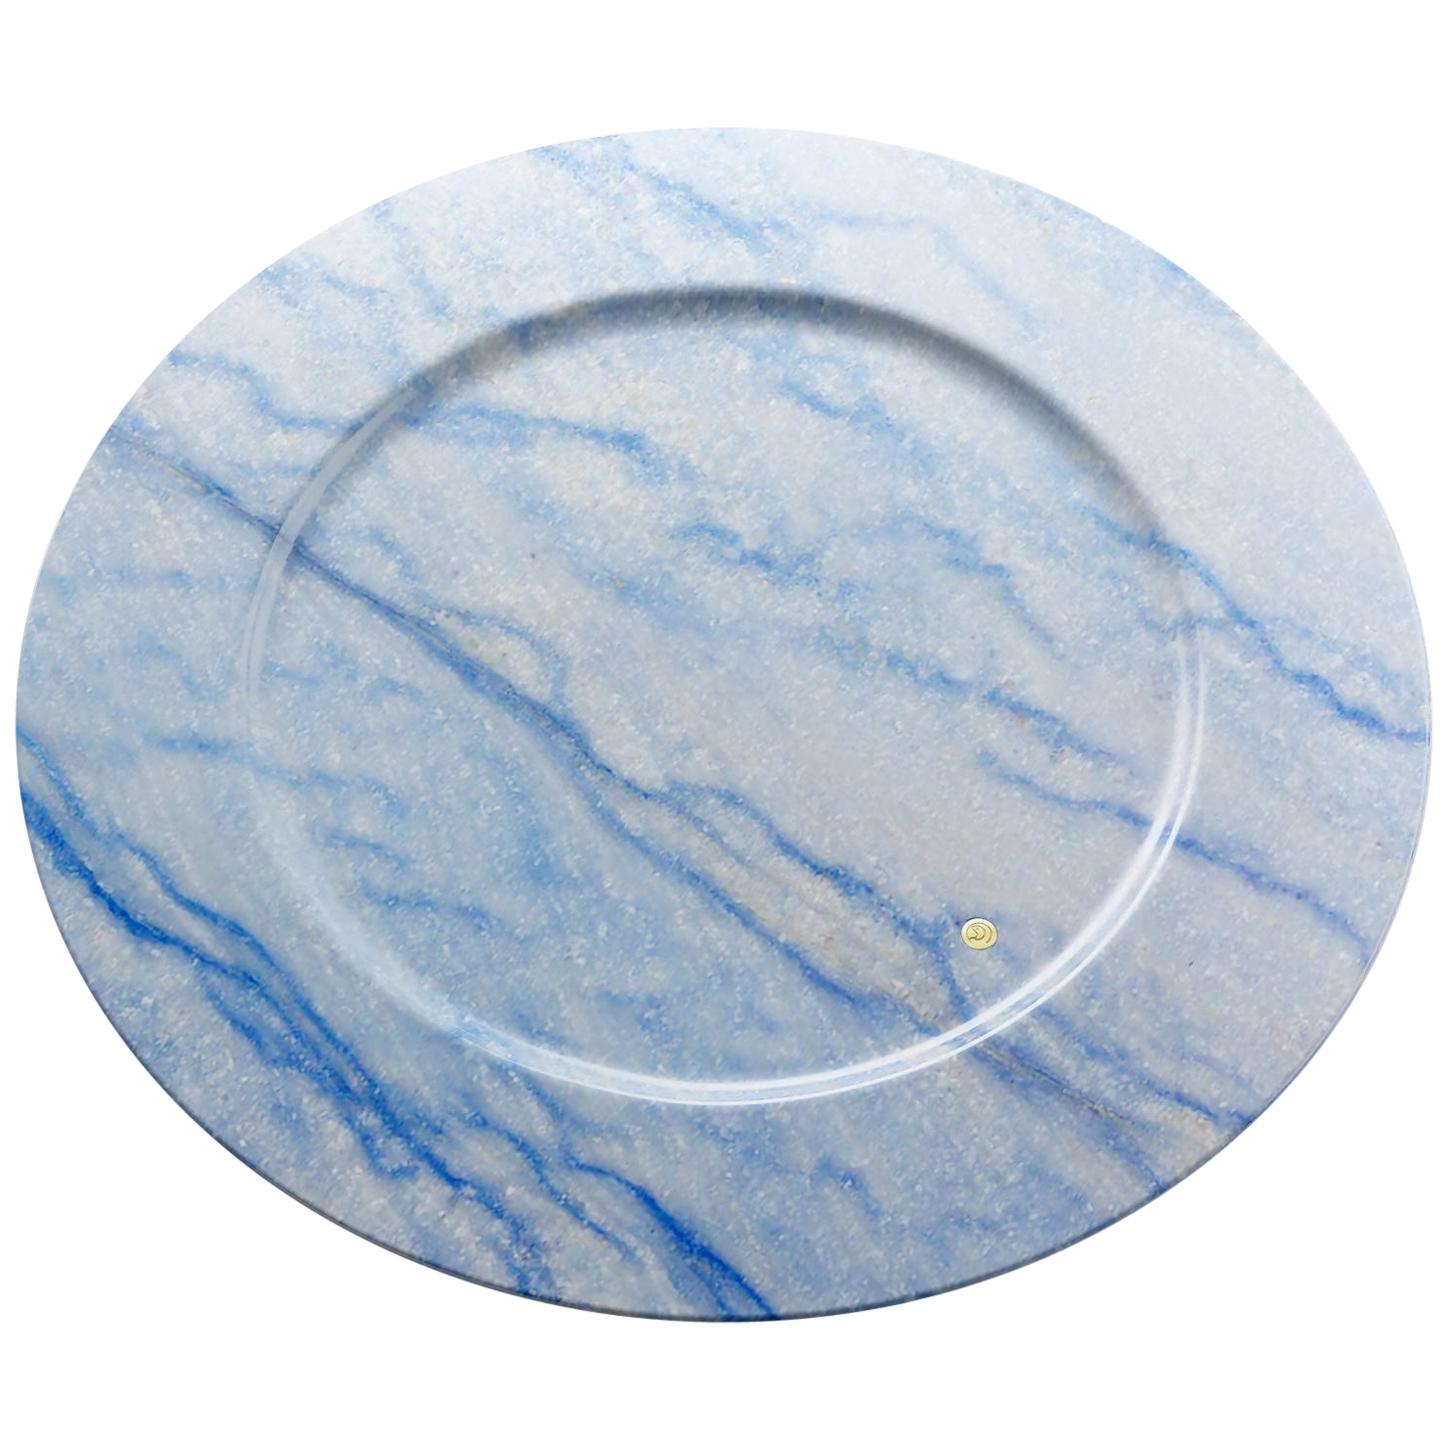 Servierplatten und -teller aus blauem Azul Macaubas-Marmor, handgefertigtes Design